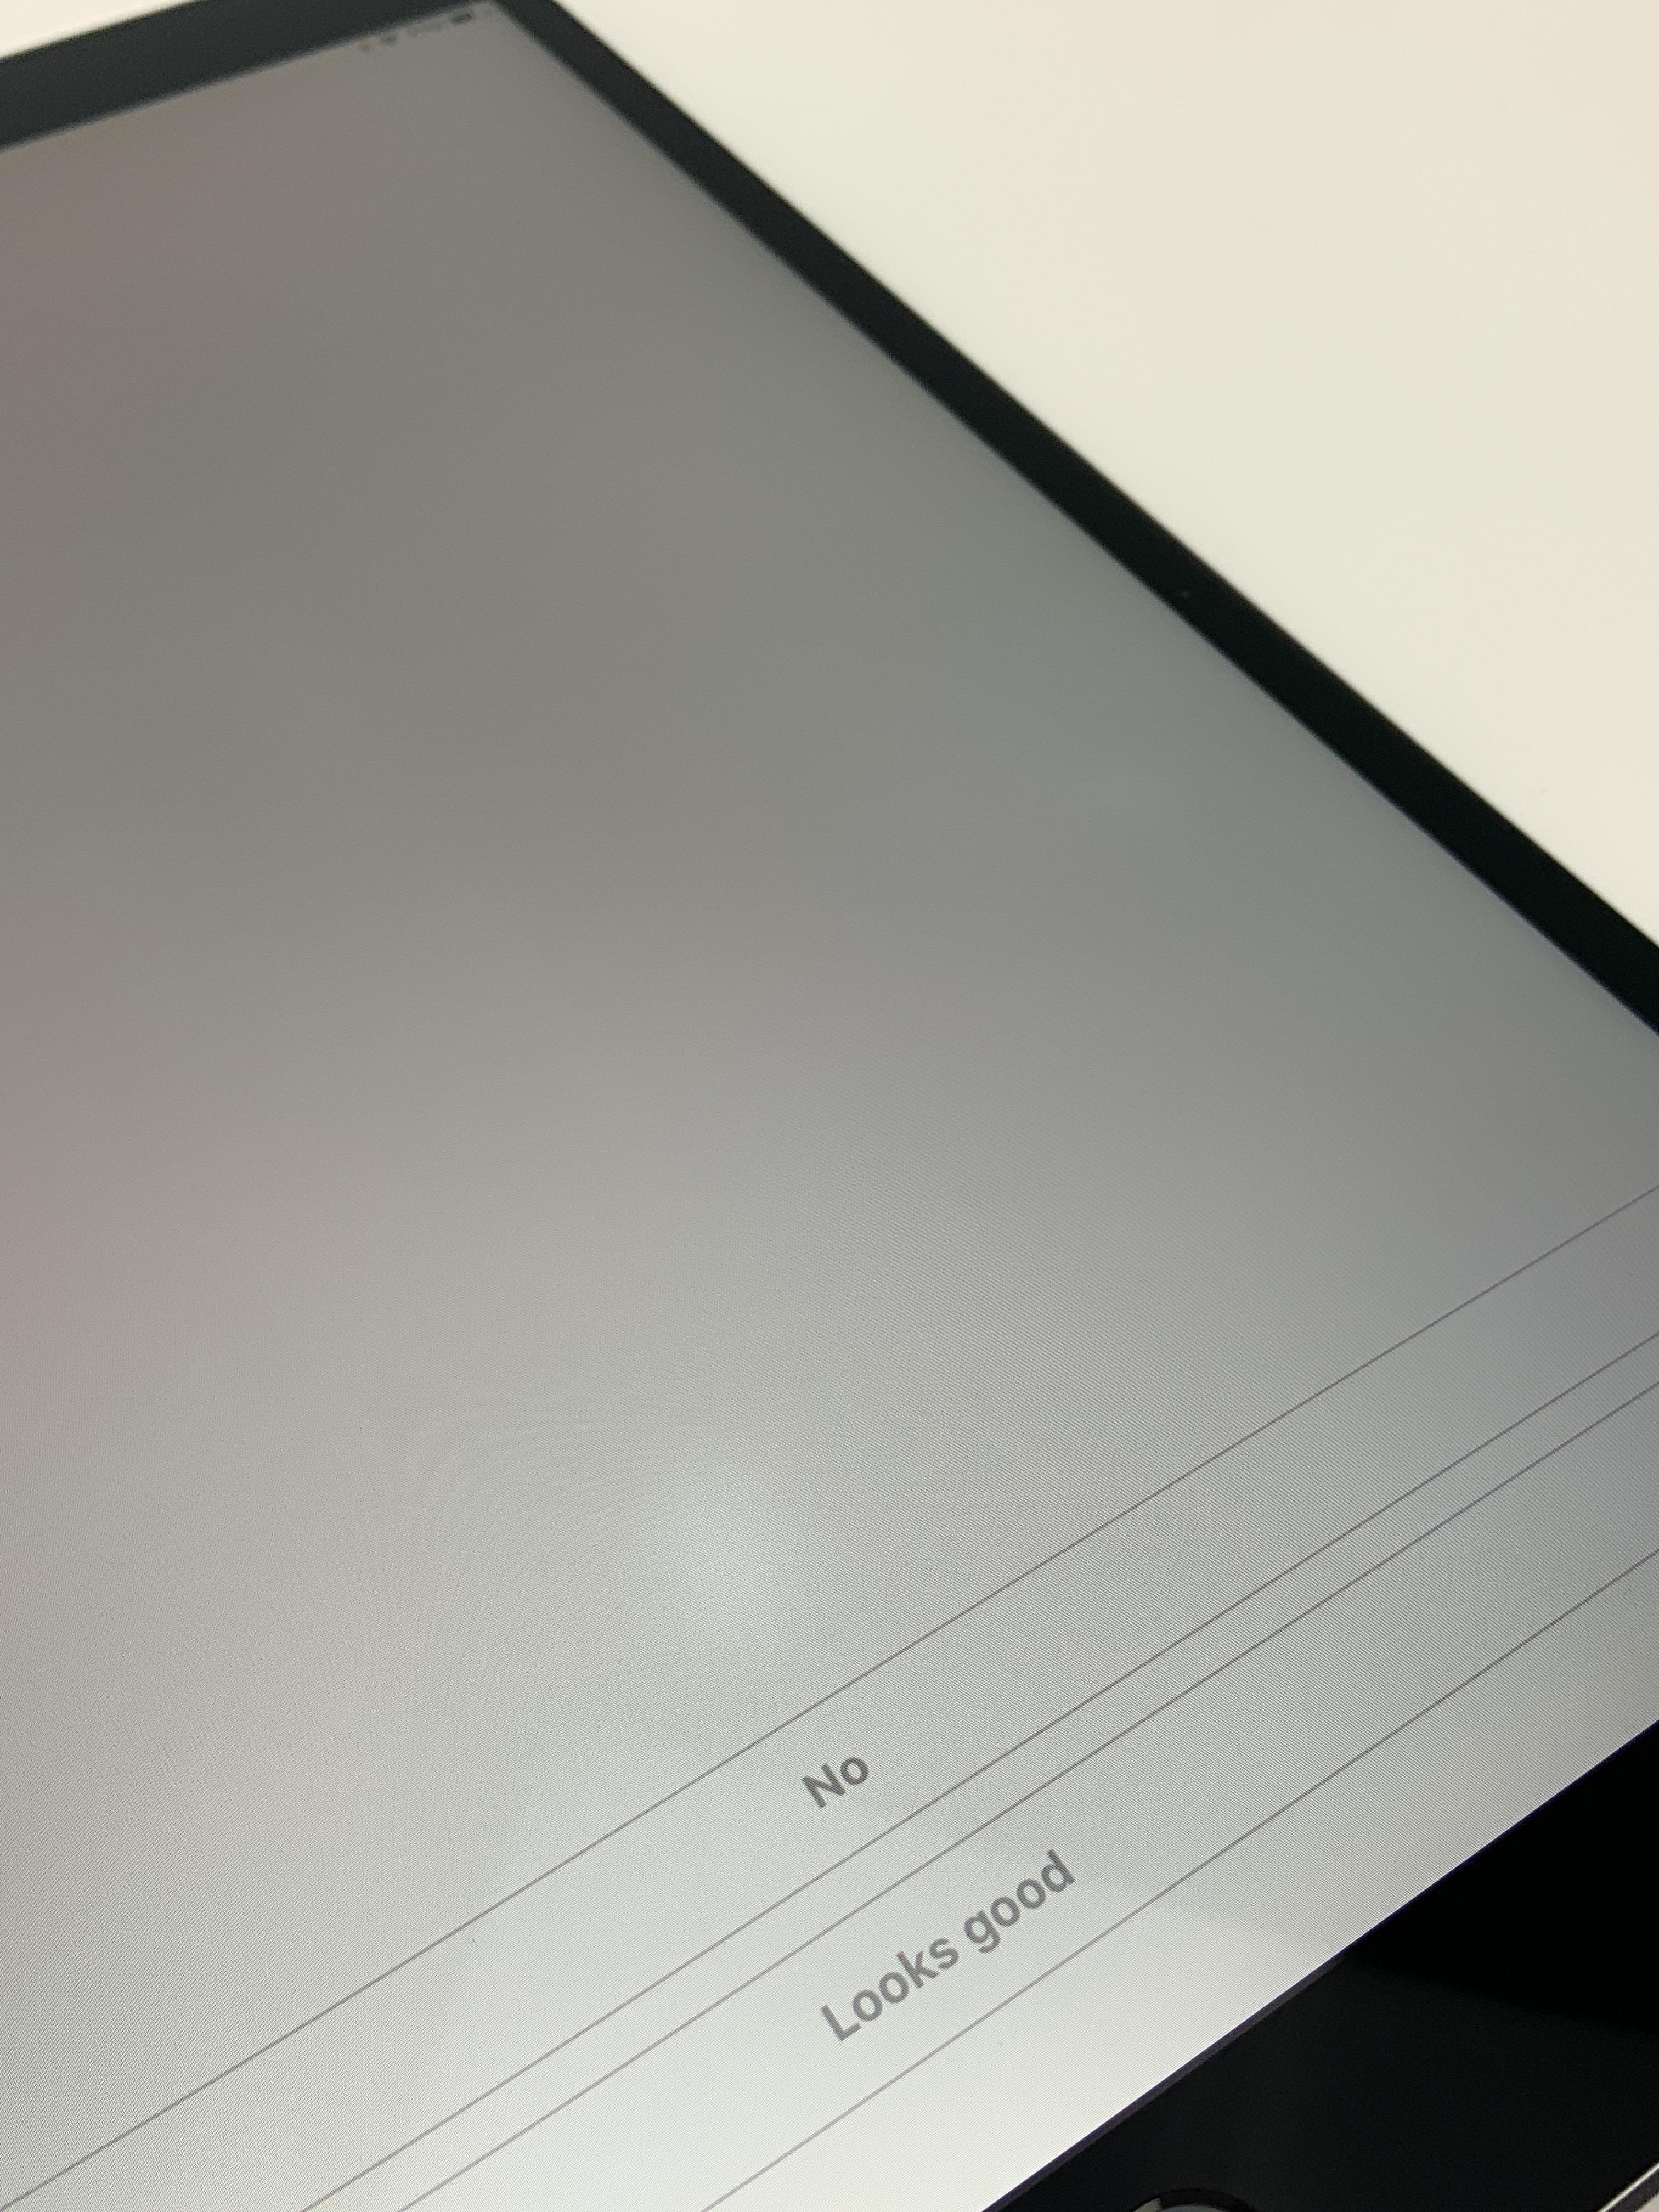 iPad Pro 10.5" Wi-Fi + Cellular 256GB, 256GB, Space Gray, Afbeelding 4